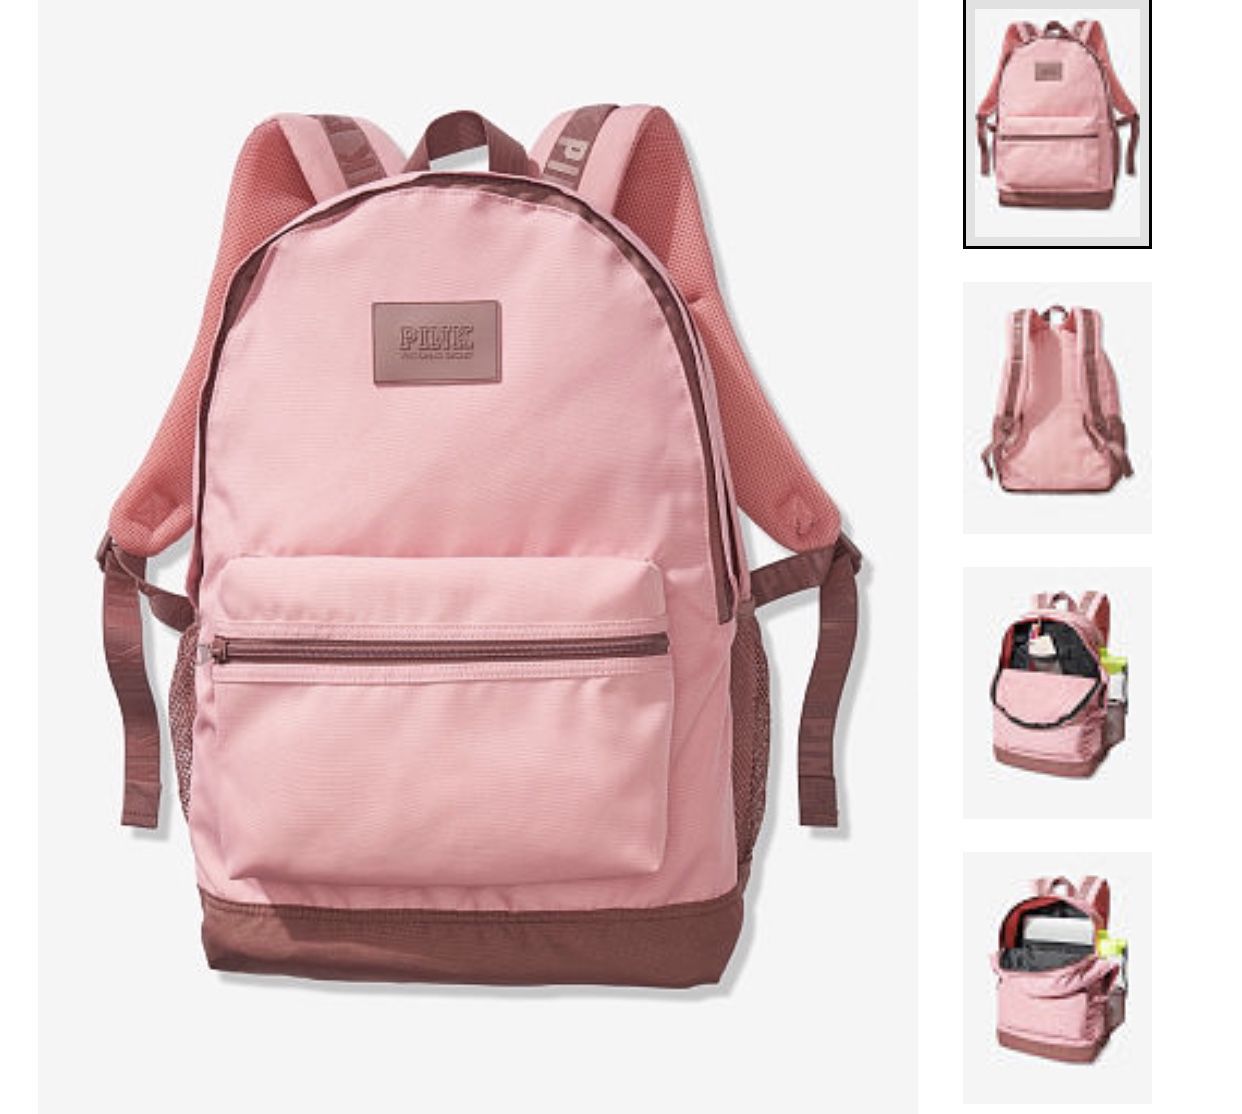 Victoria’s Secret rose pink Backpack